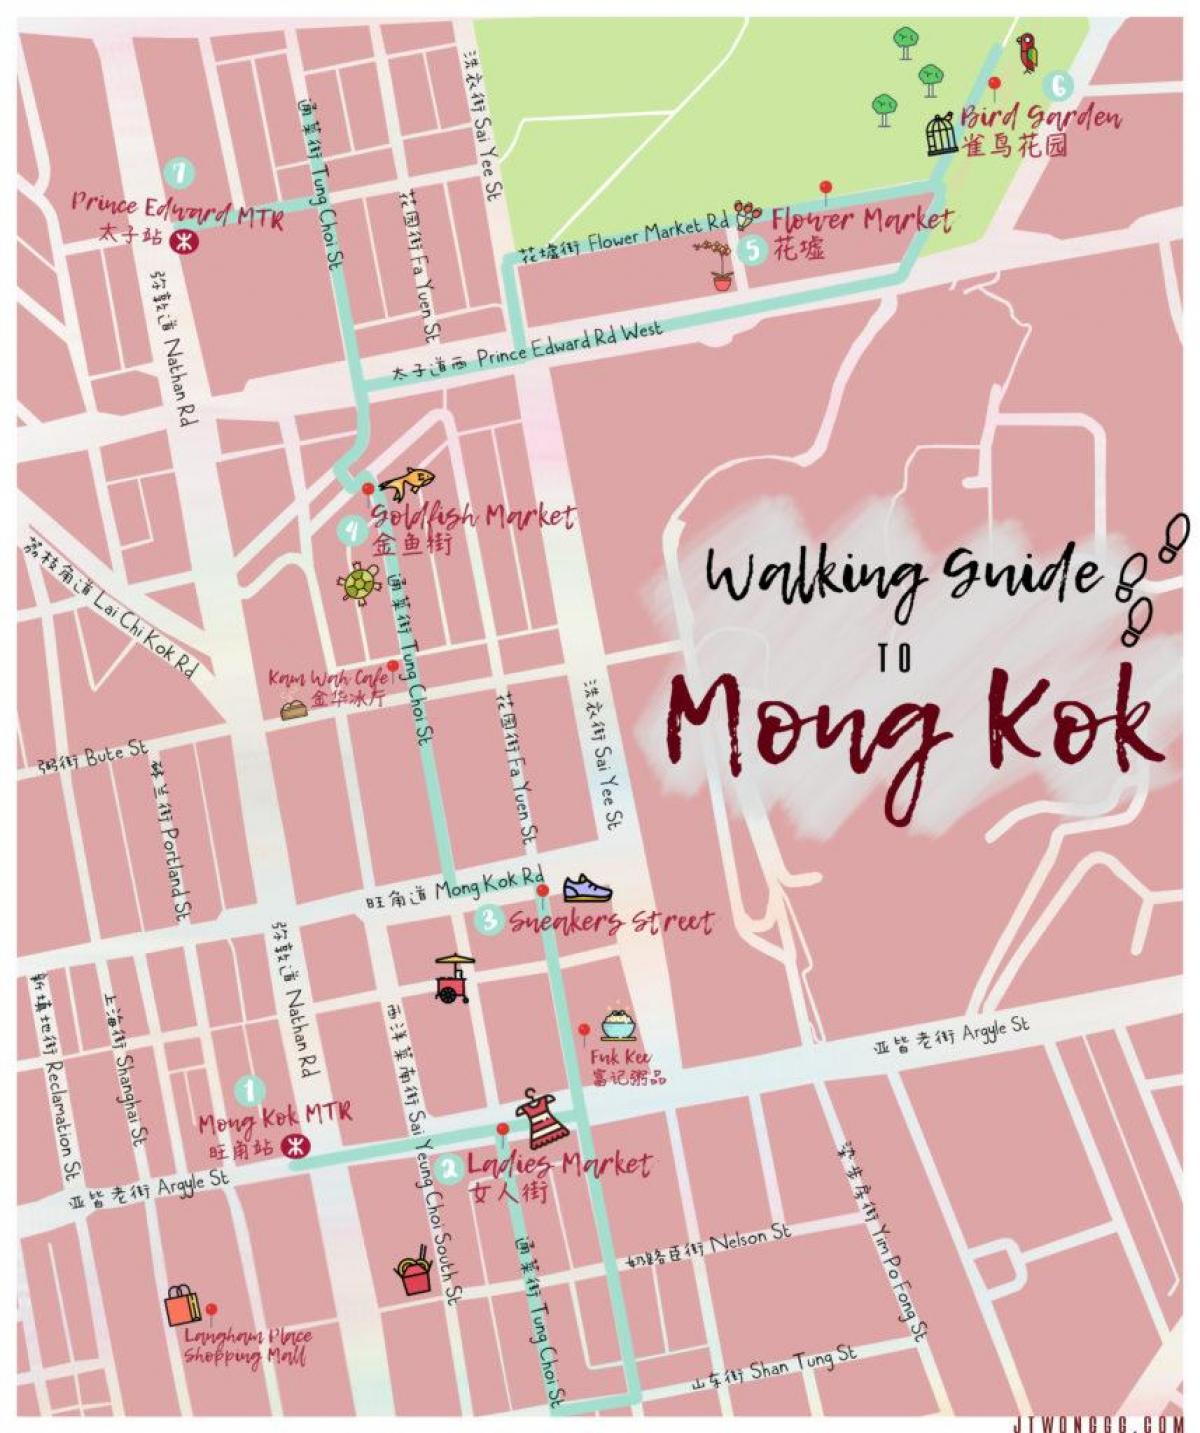 کا نقشہ مونگ کوک ہانگ کانگ